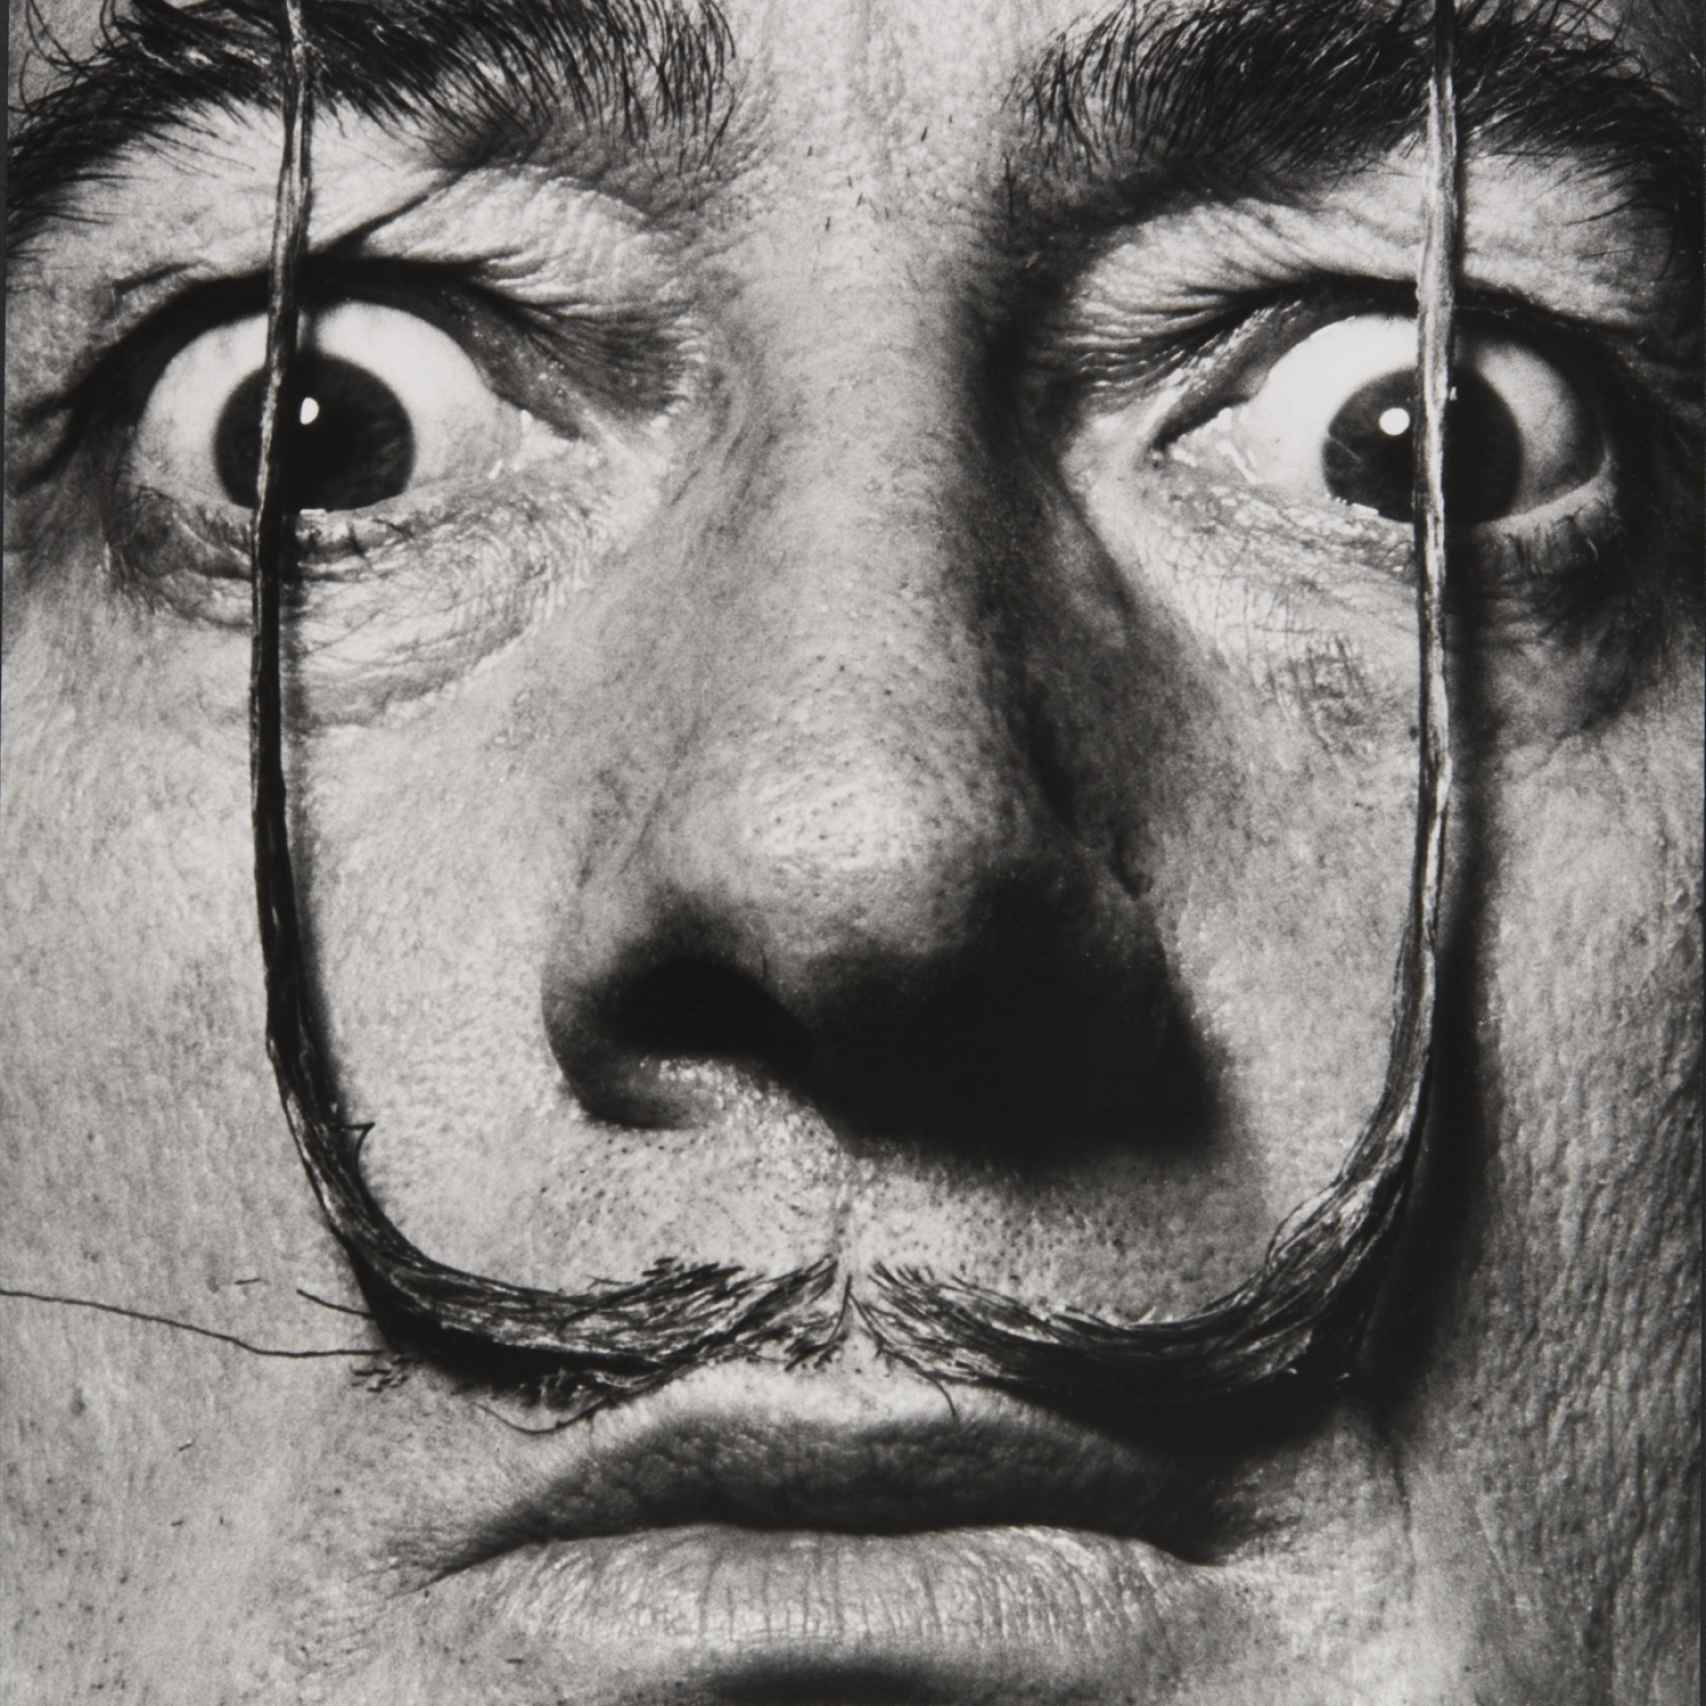 Mi bigote custodia la entrada a mi verdadero yo. Dalí por Halsman.